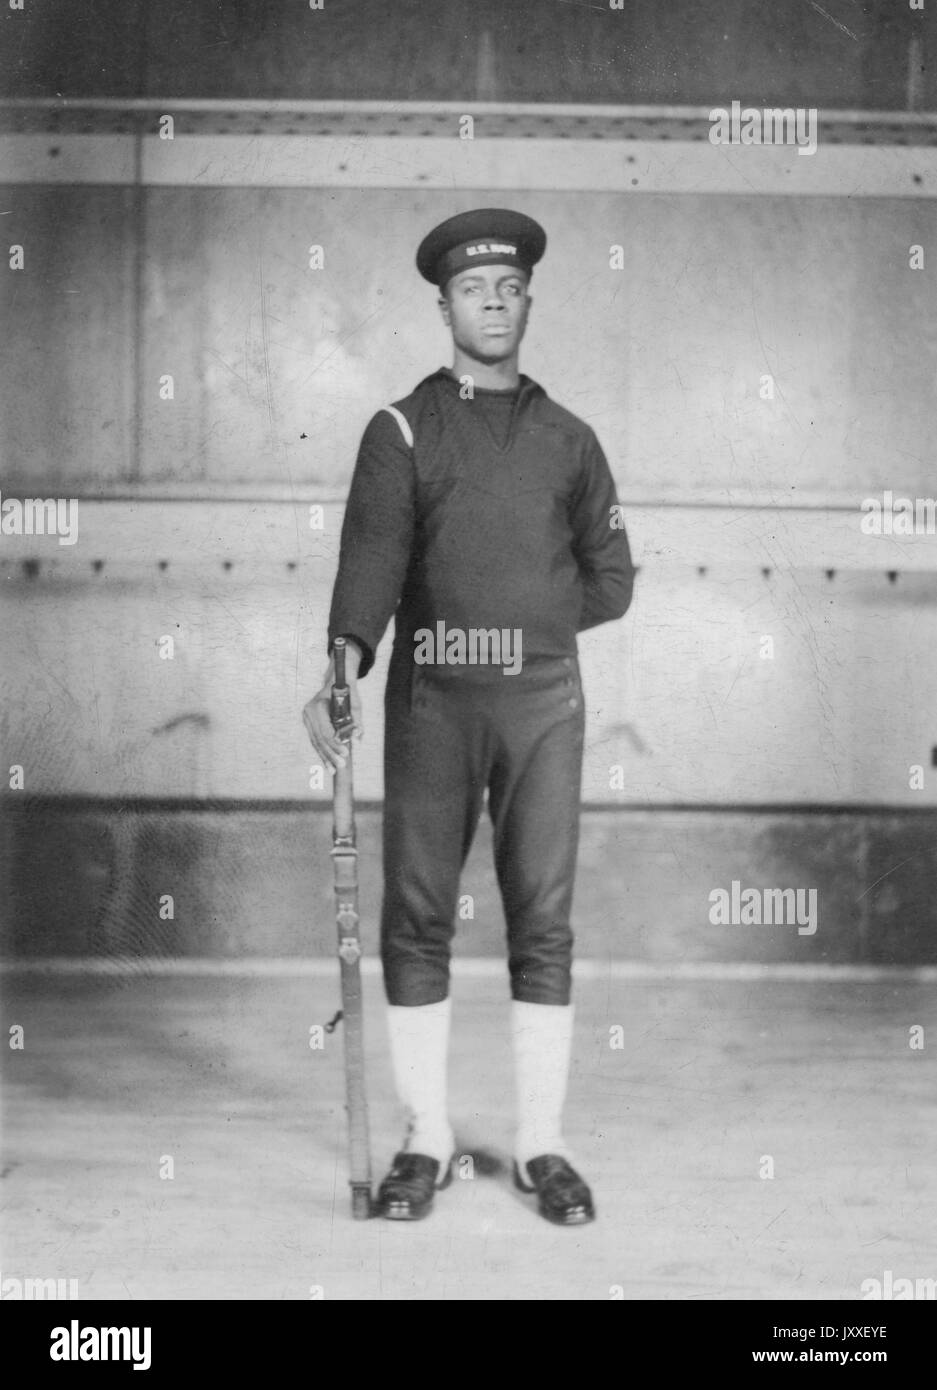 Portrait d'un marin de la marine des États-Unis d'Amérique Afrique debout devant un grand bateau, il porte un uniforme de marin de couleur sombre, un bras est derrière le dos et l'autre brandissant une arme à feu par son côté, 1920. Banque D'Images